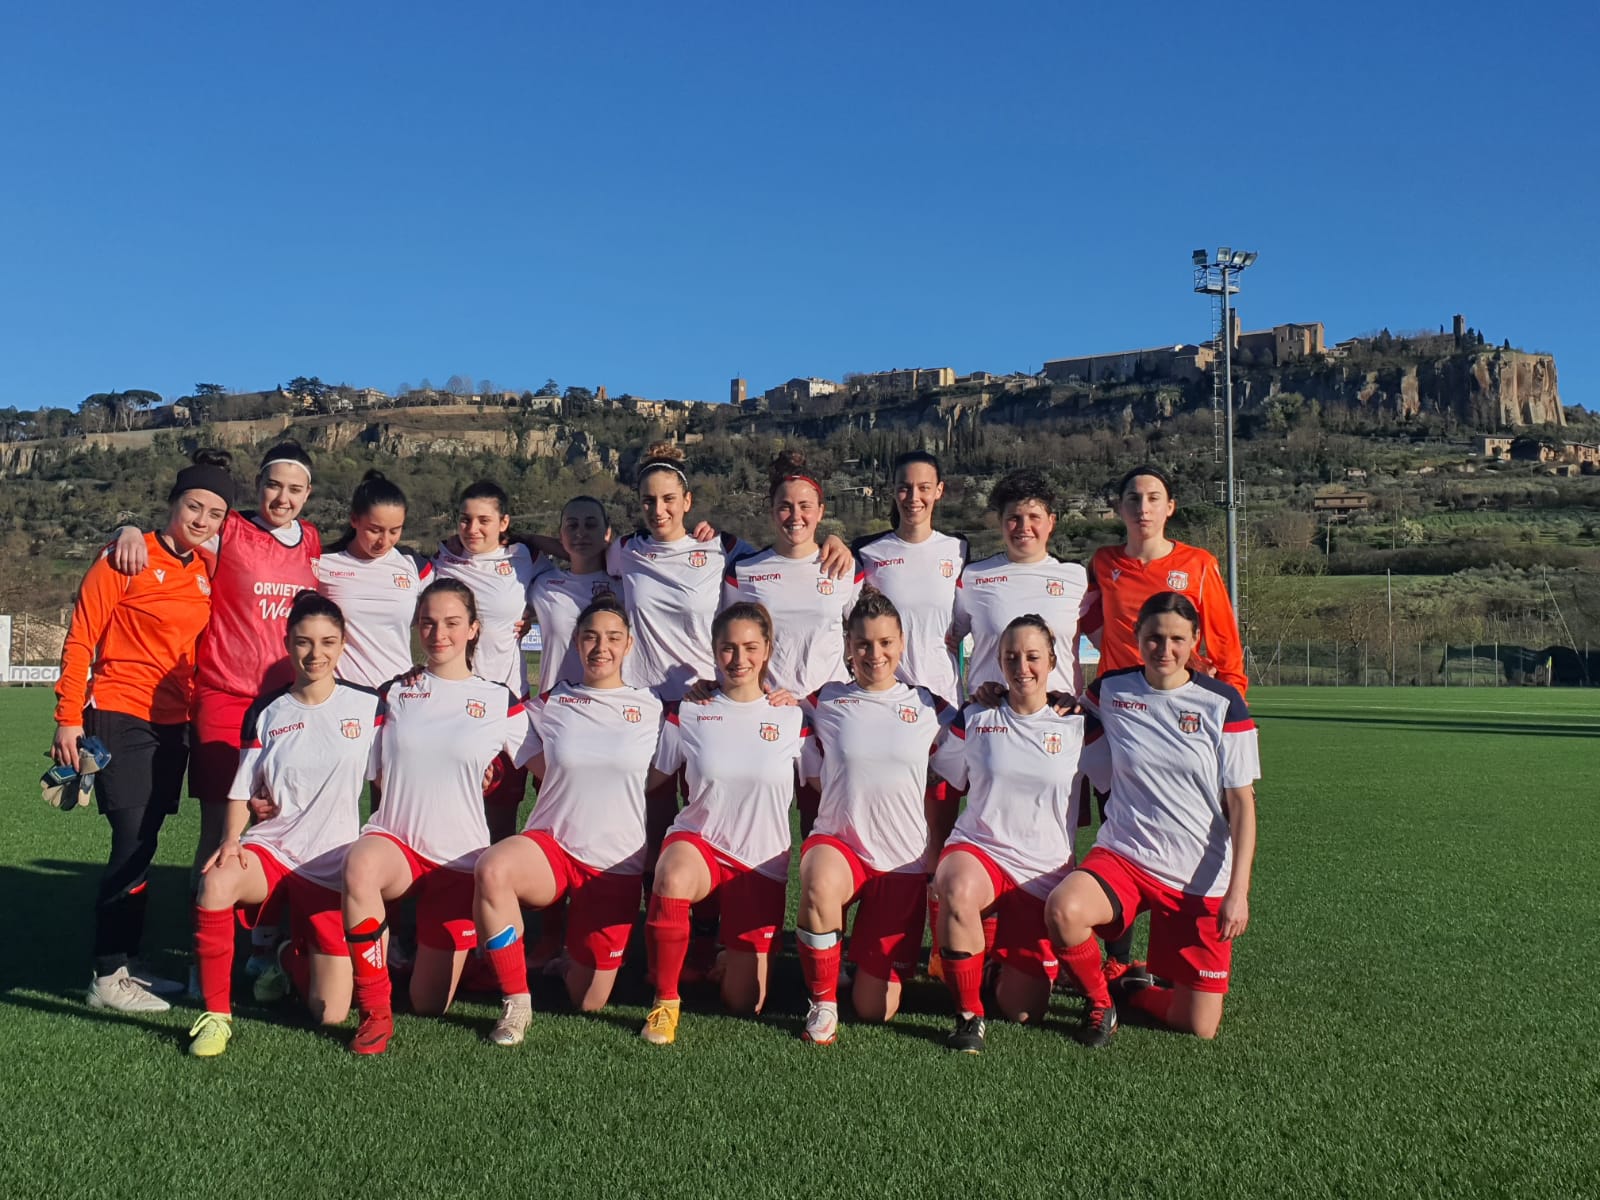 Festa grande in casa Orvieto FC per la vittoria della femminile di calcio a 11, parla il presidente Lorenzotti